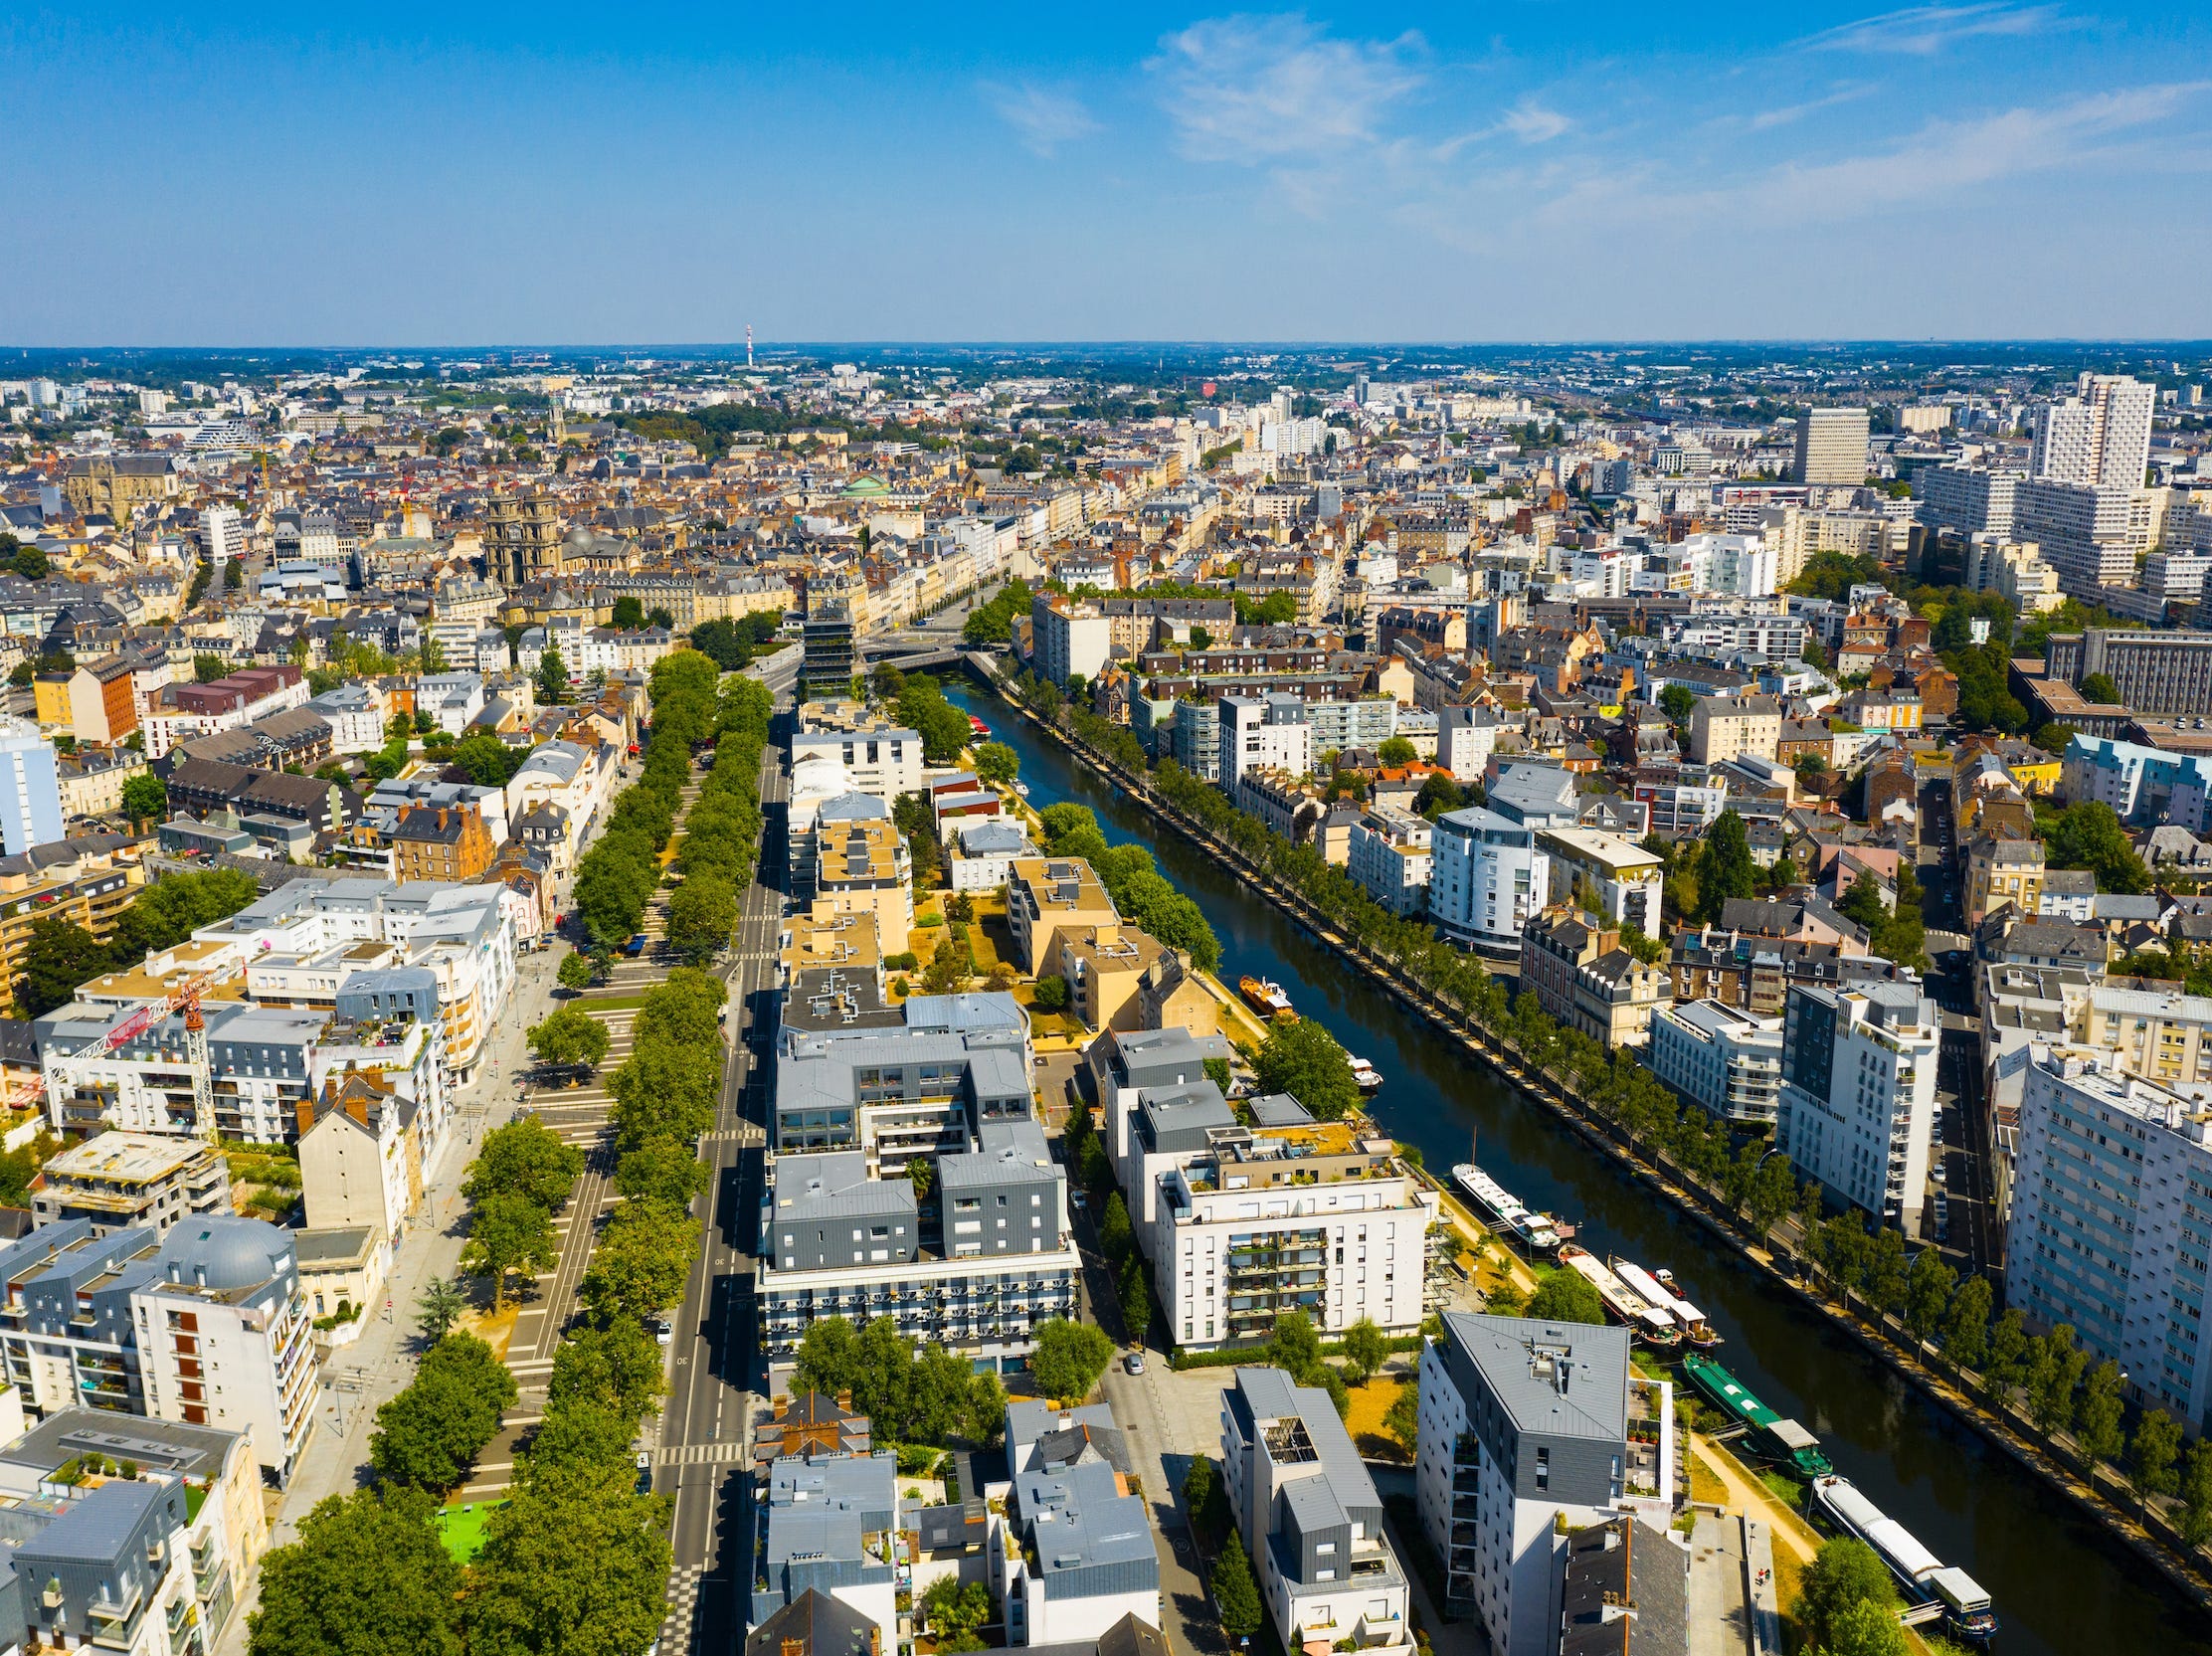 Panoramablick auf die Stadt Rennes mit modernen Apartmentgebäuden in Frankreich